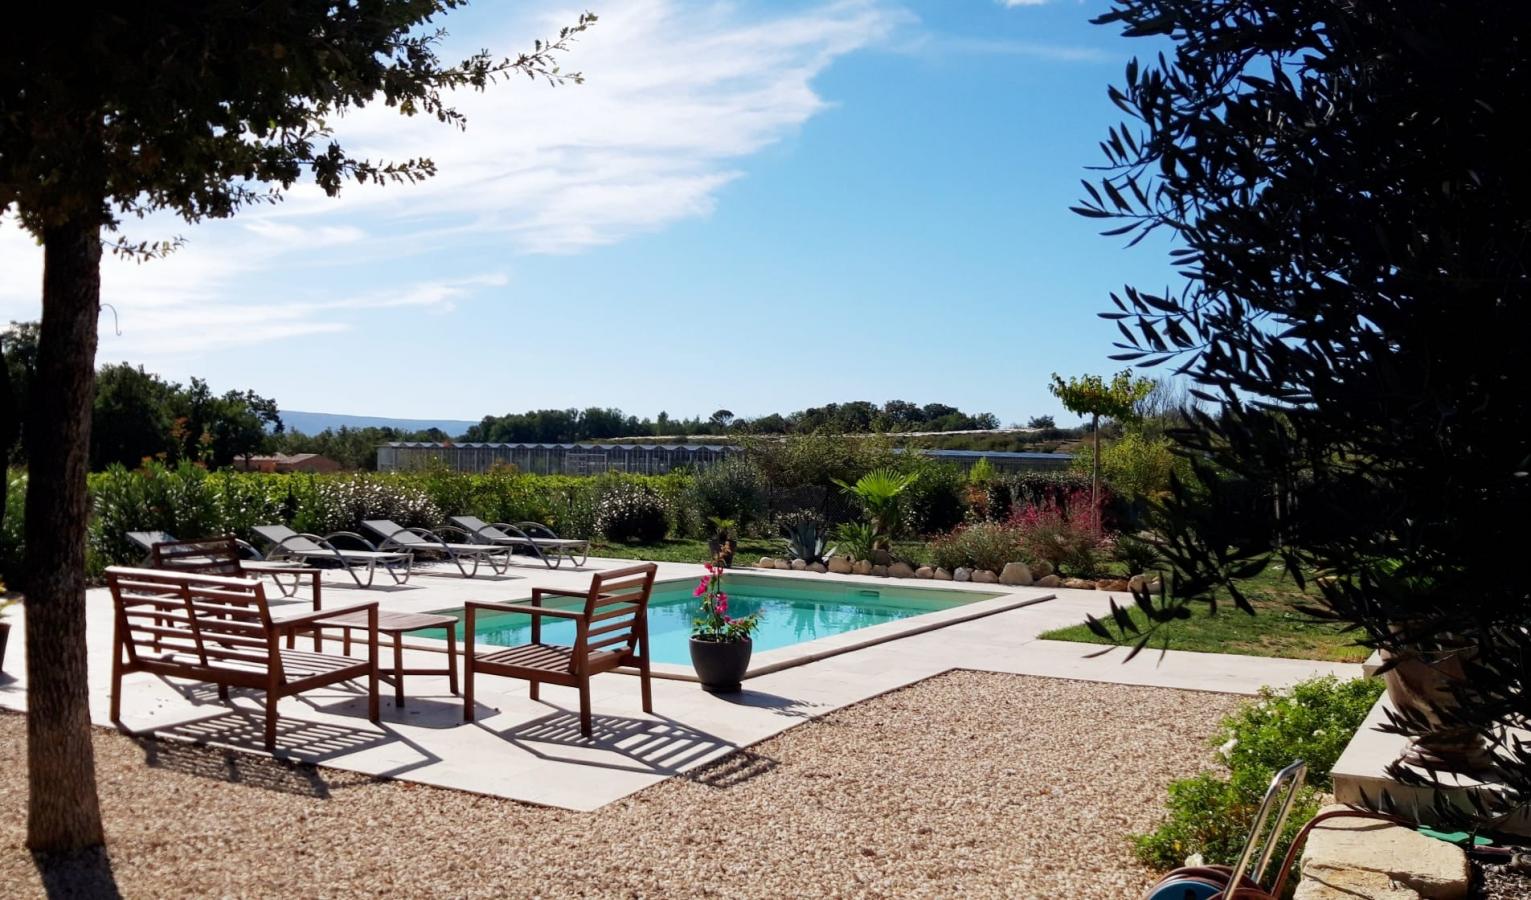 Villa contemporaine 6 personnes avec piscine chauffee privee au vert et au calme proche gordes - luberon - provence